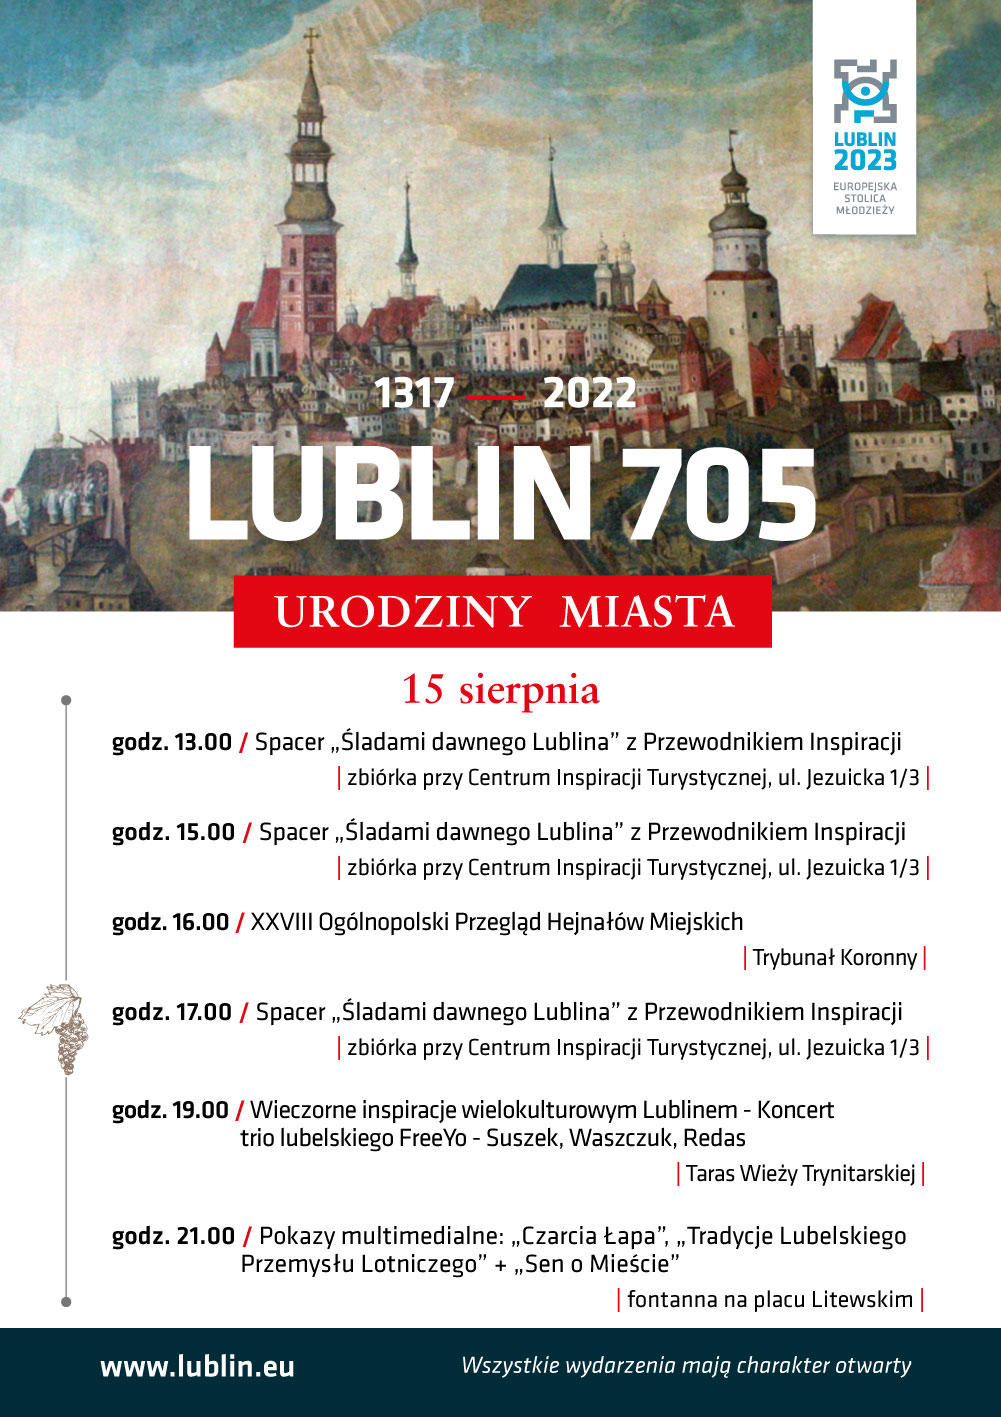 Lublin będzie świętował 705. urodziny. W mieście odbędzie się Ogólnopolski Przegląd Hejnałów Miejskich